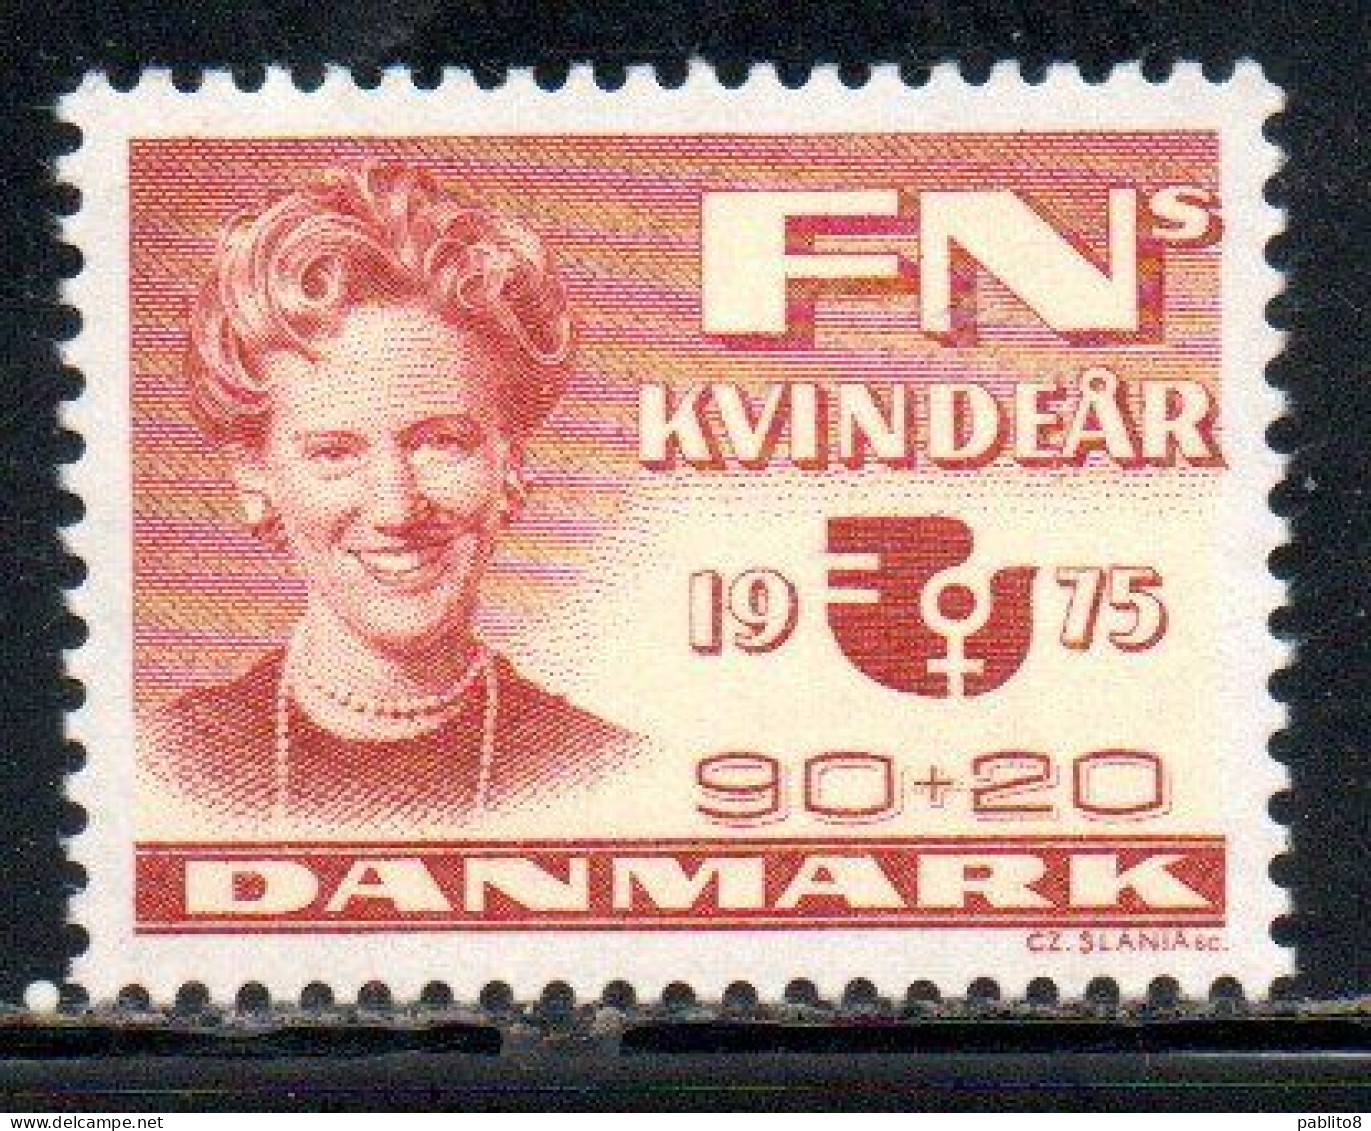 DANEMARK DANMARK DENMARK DANIMARCA 1975 INTERNATIONAL WOMEN'S YEAR QUEEN MARGRETHE IWY 90 + 20o MNH - Ungebraucht